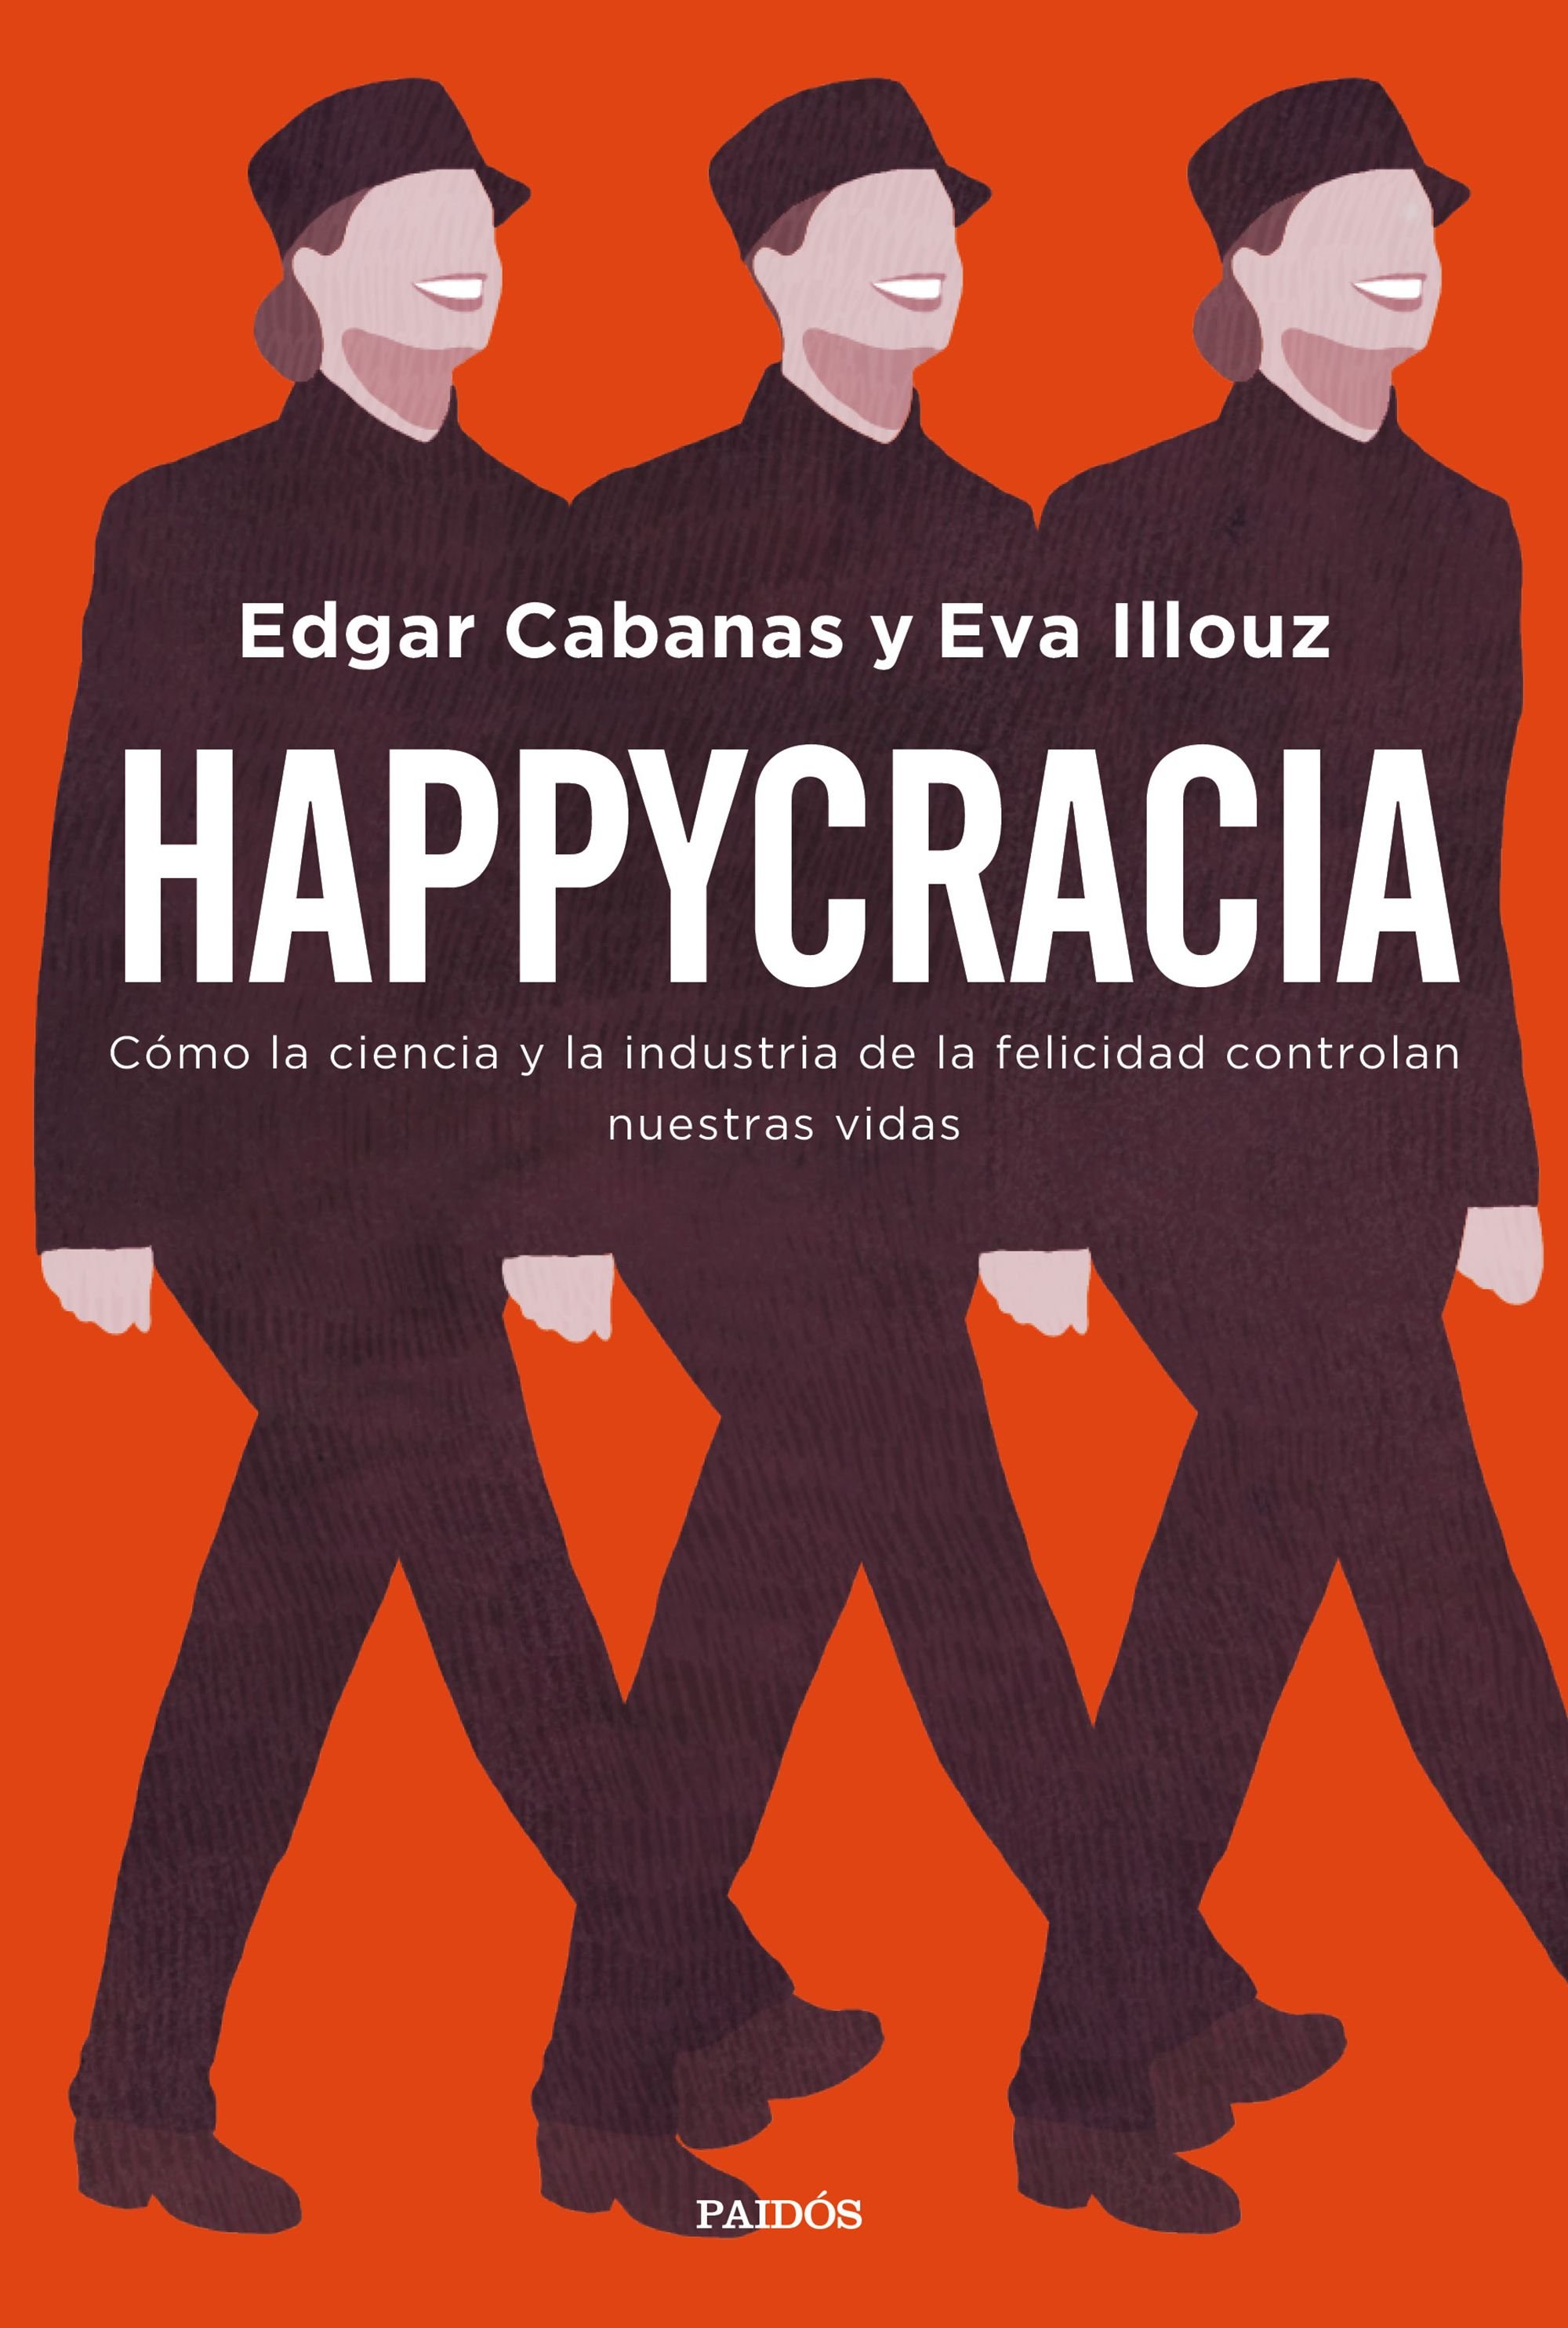 'Happycracia': "La recerca de la felicitat pot generar més problemes dels que resol"